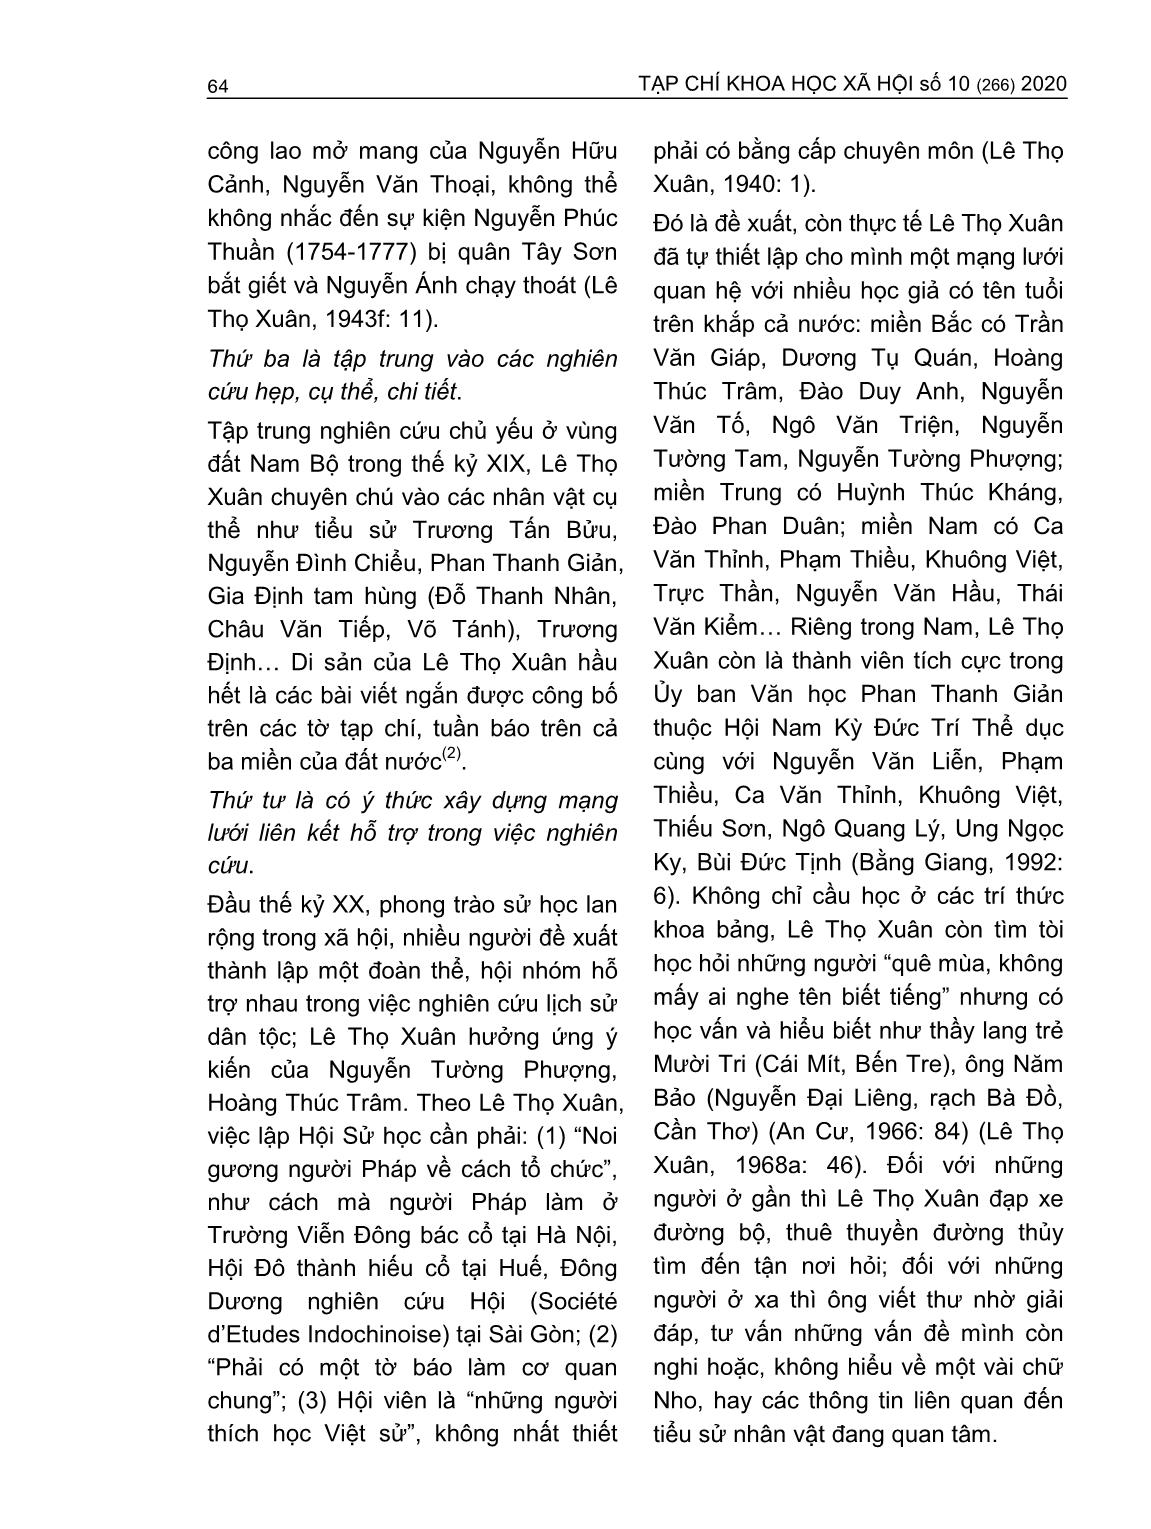 Đóng góp của Lê Thọ Xuân trong nghiên cứu lịch sử Nam Bộ triều Nguyễn thế kỷ XIX trang 5